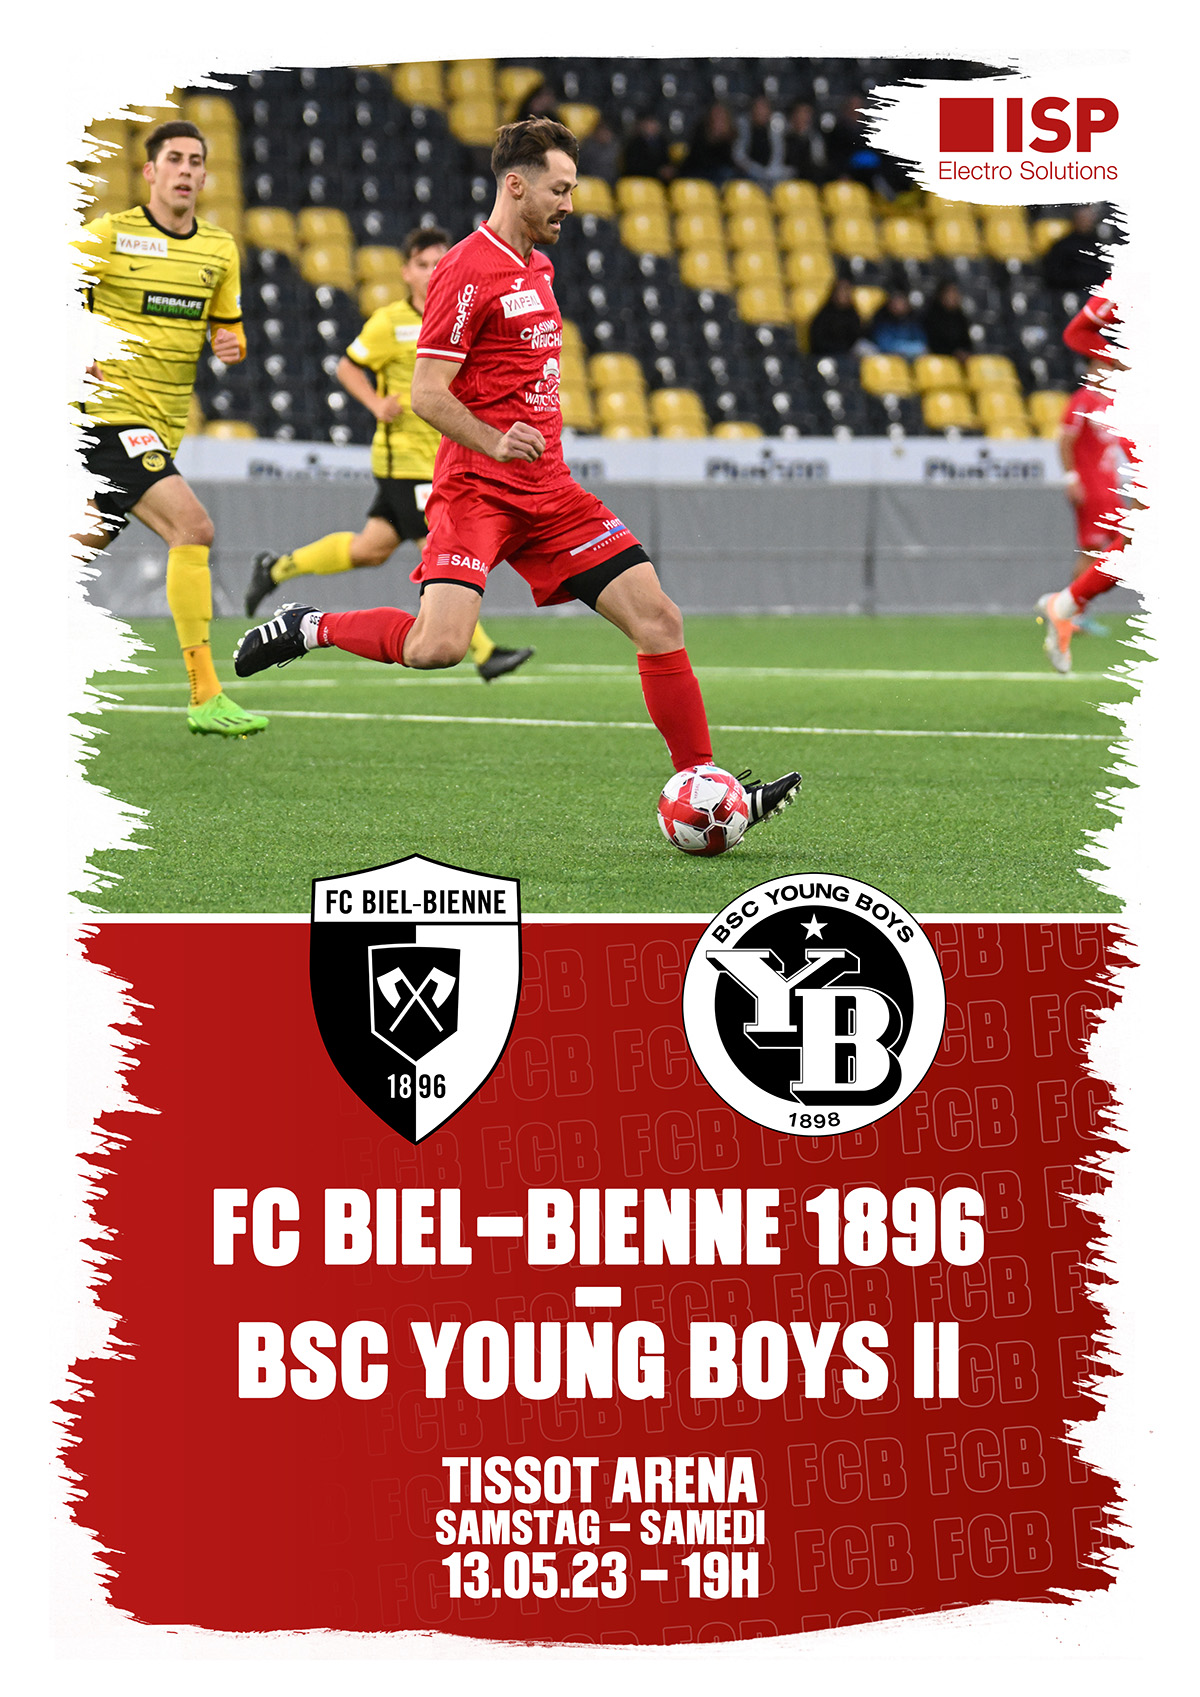 Herzlich willkommen dem BSC Young Boys U21 und seinen mitgereisten Fans